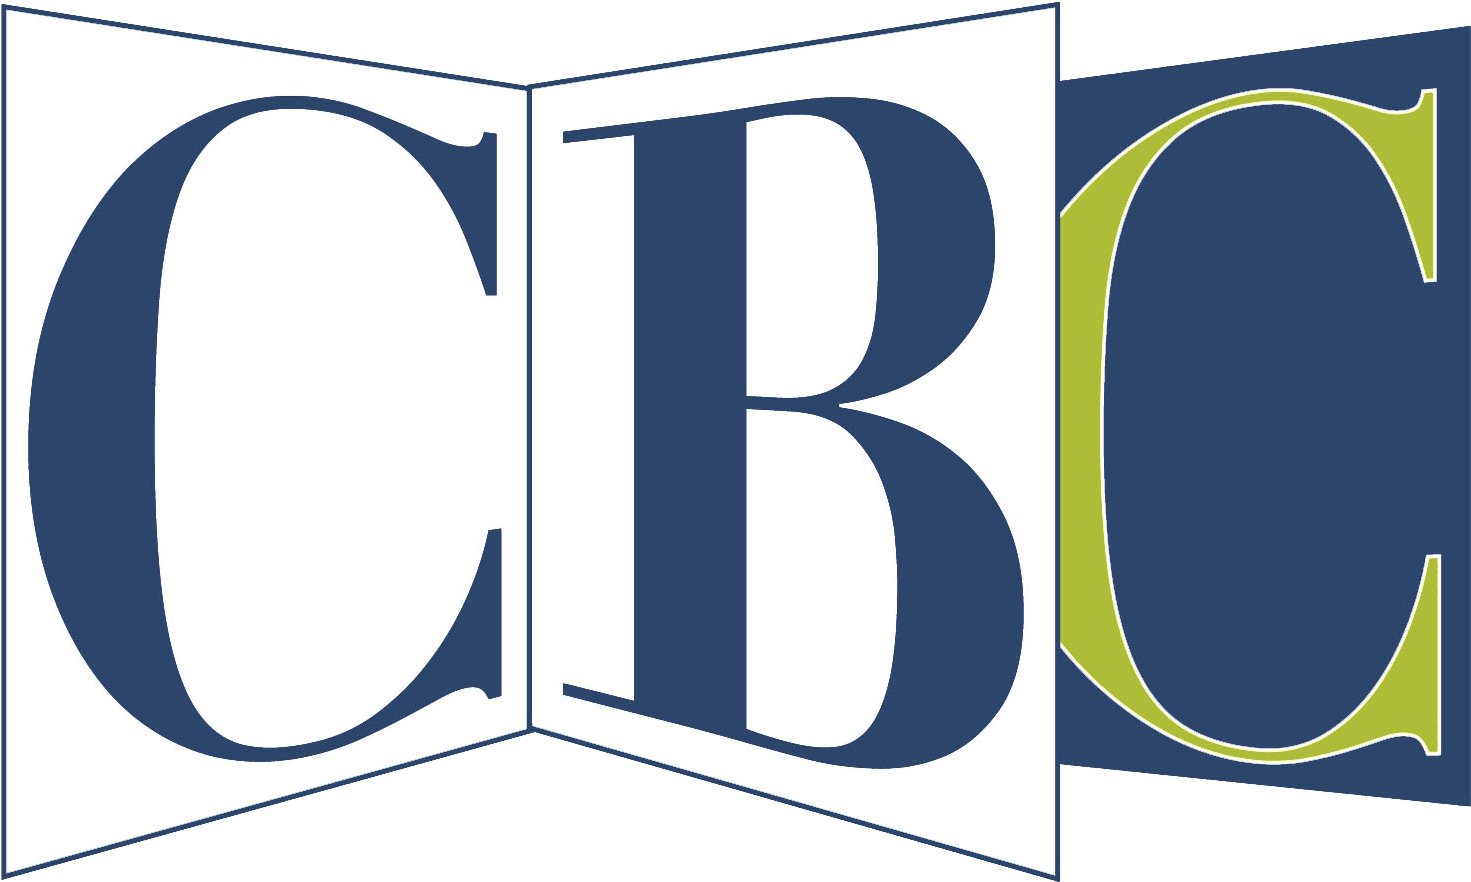 Cbs Paramount Television Logo (1477x903)